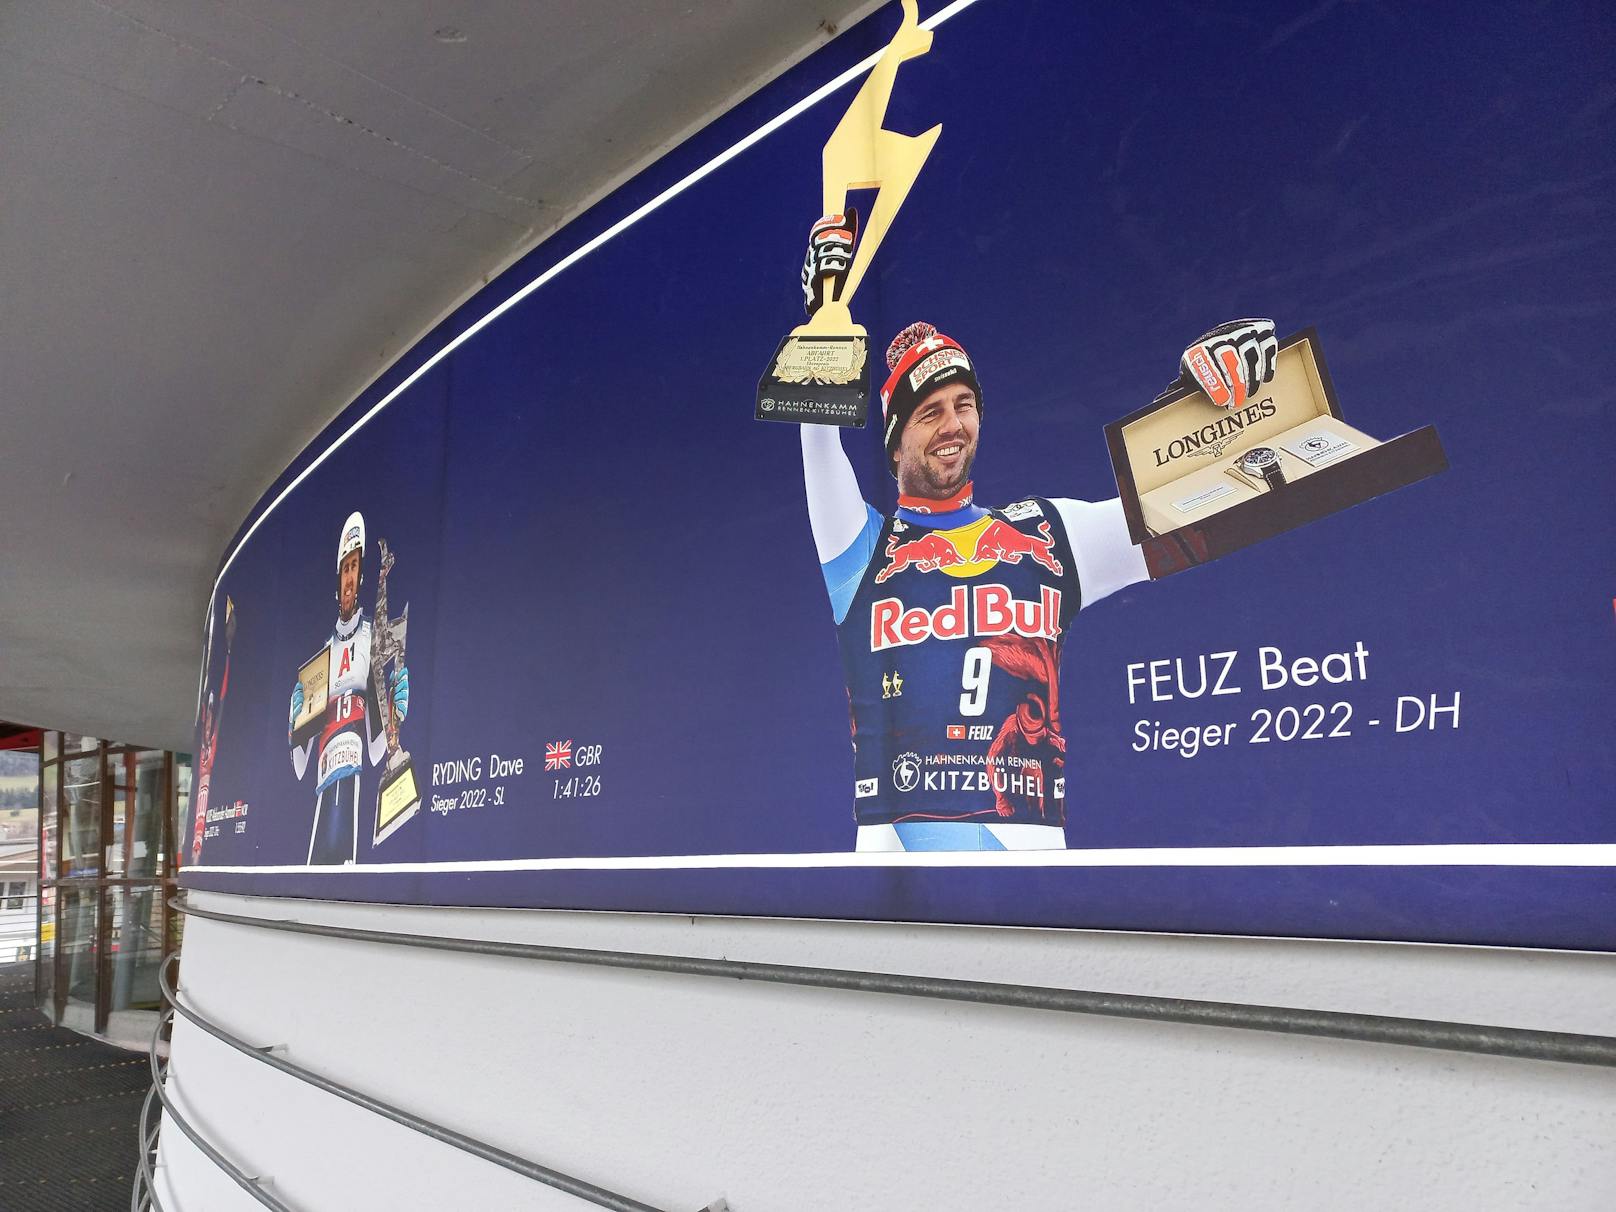 Der zweite Sieger 2022, Beat Feuz, beendet nach Kitzbühel seine Karriere.